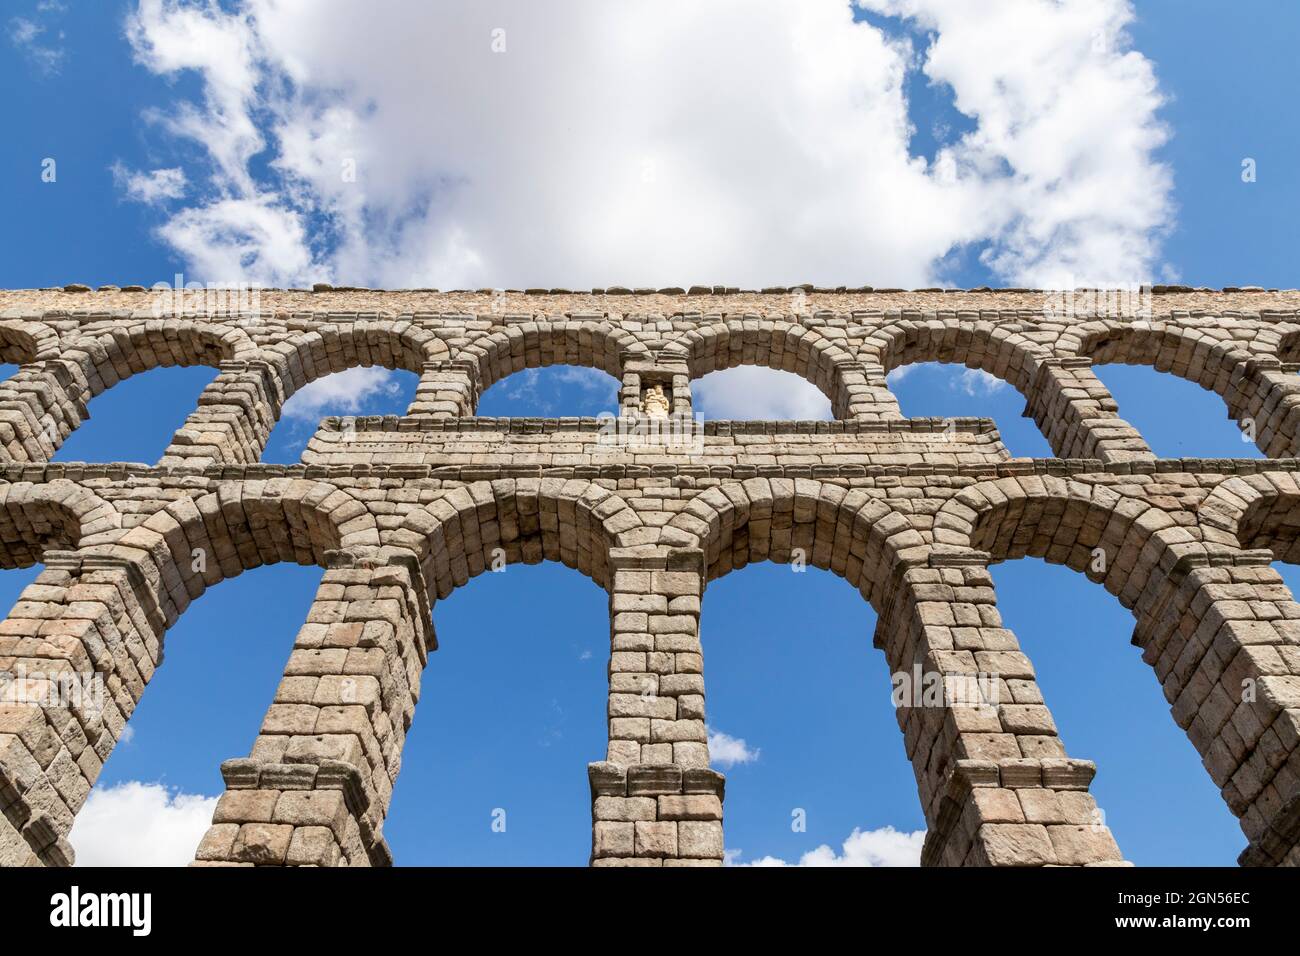 Ségovie, Espagne. Sculpture de la Vierge Marie dans l'Acueducto de Segovia, un aqueduc romain ou pont d'eau construit au 1er siècle après J.-C. Banque D'Images